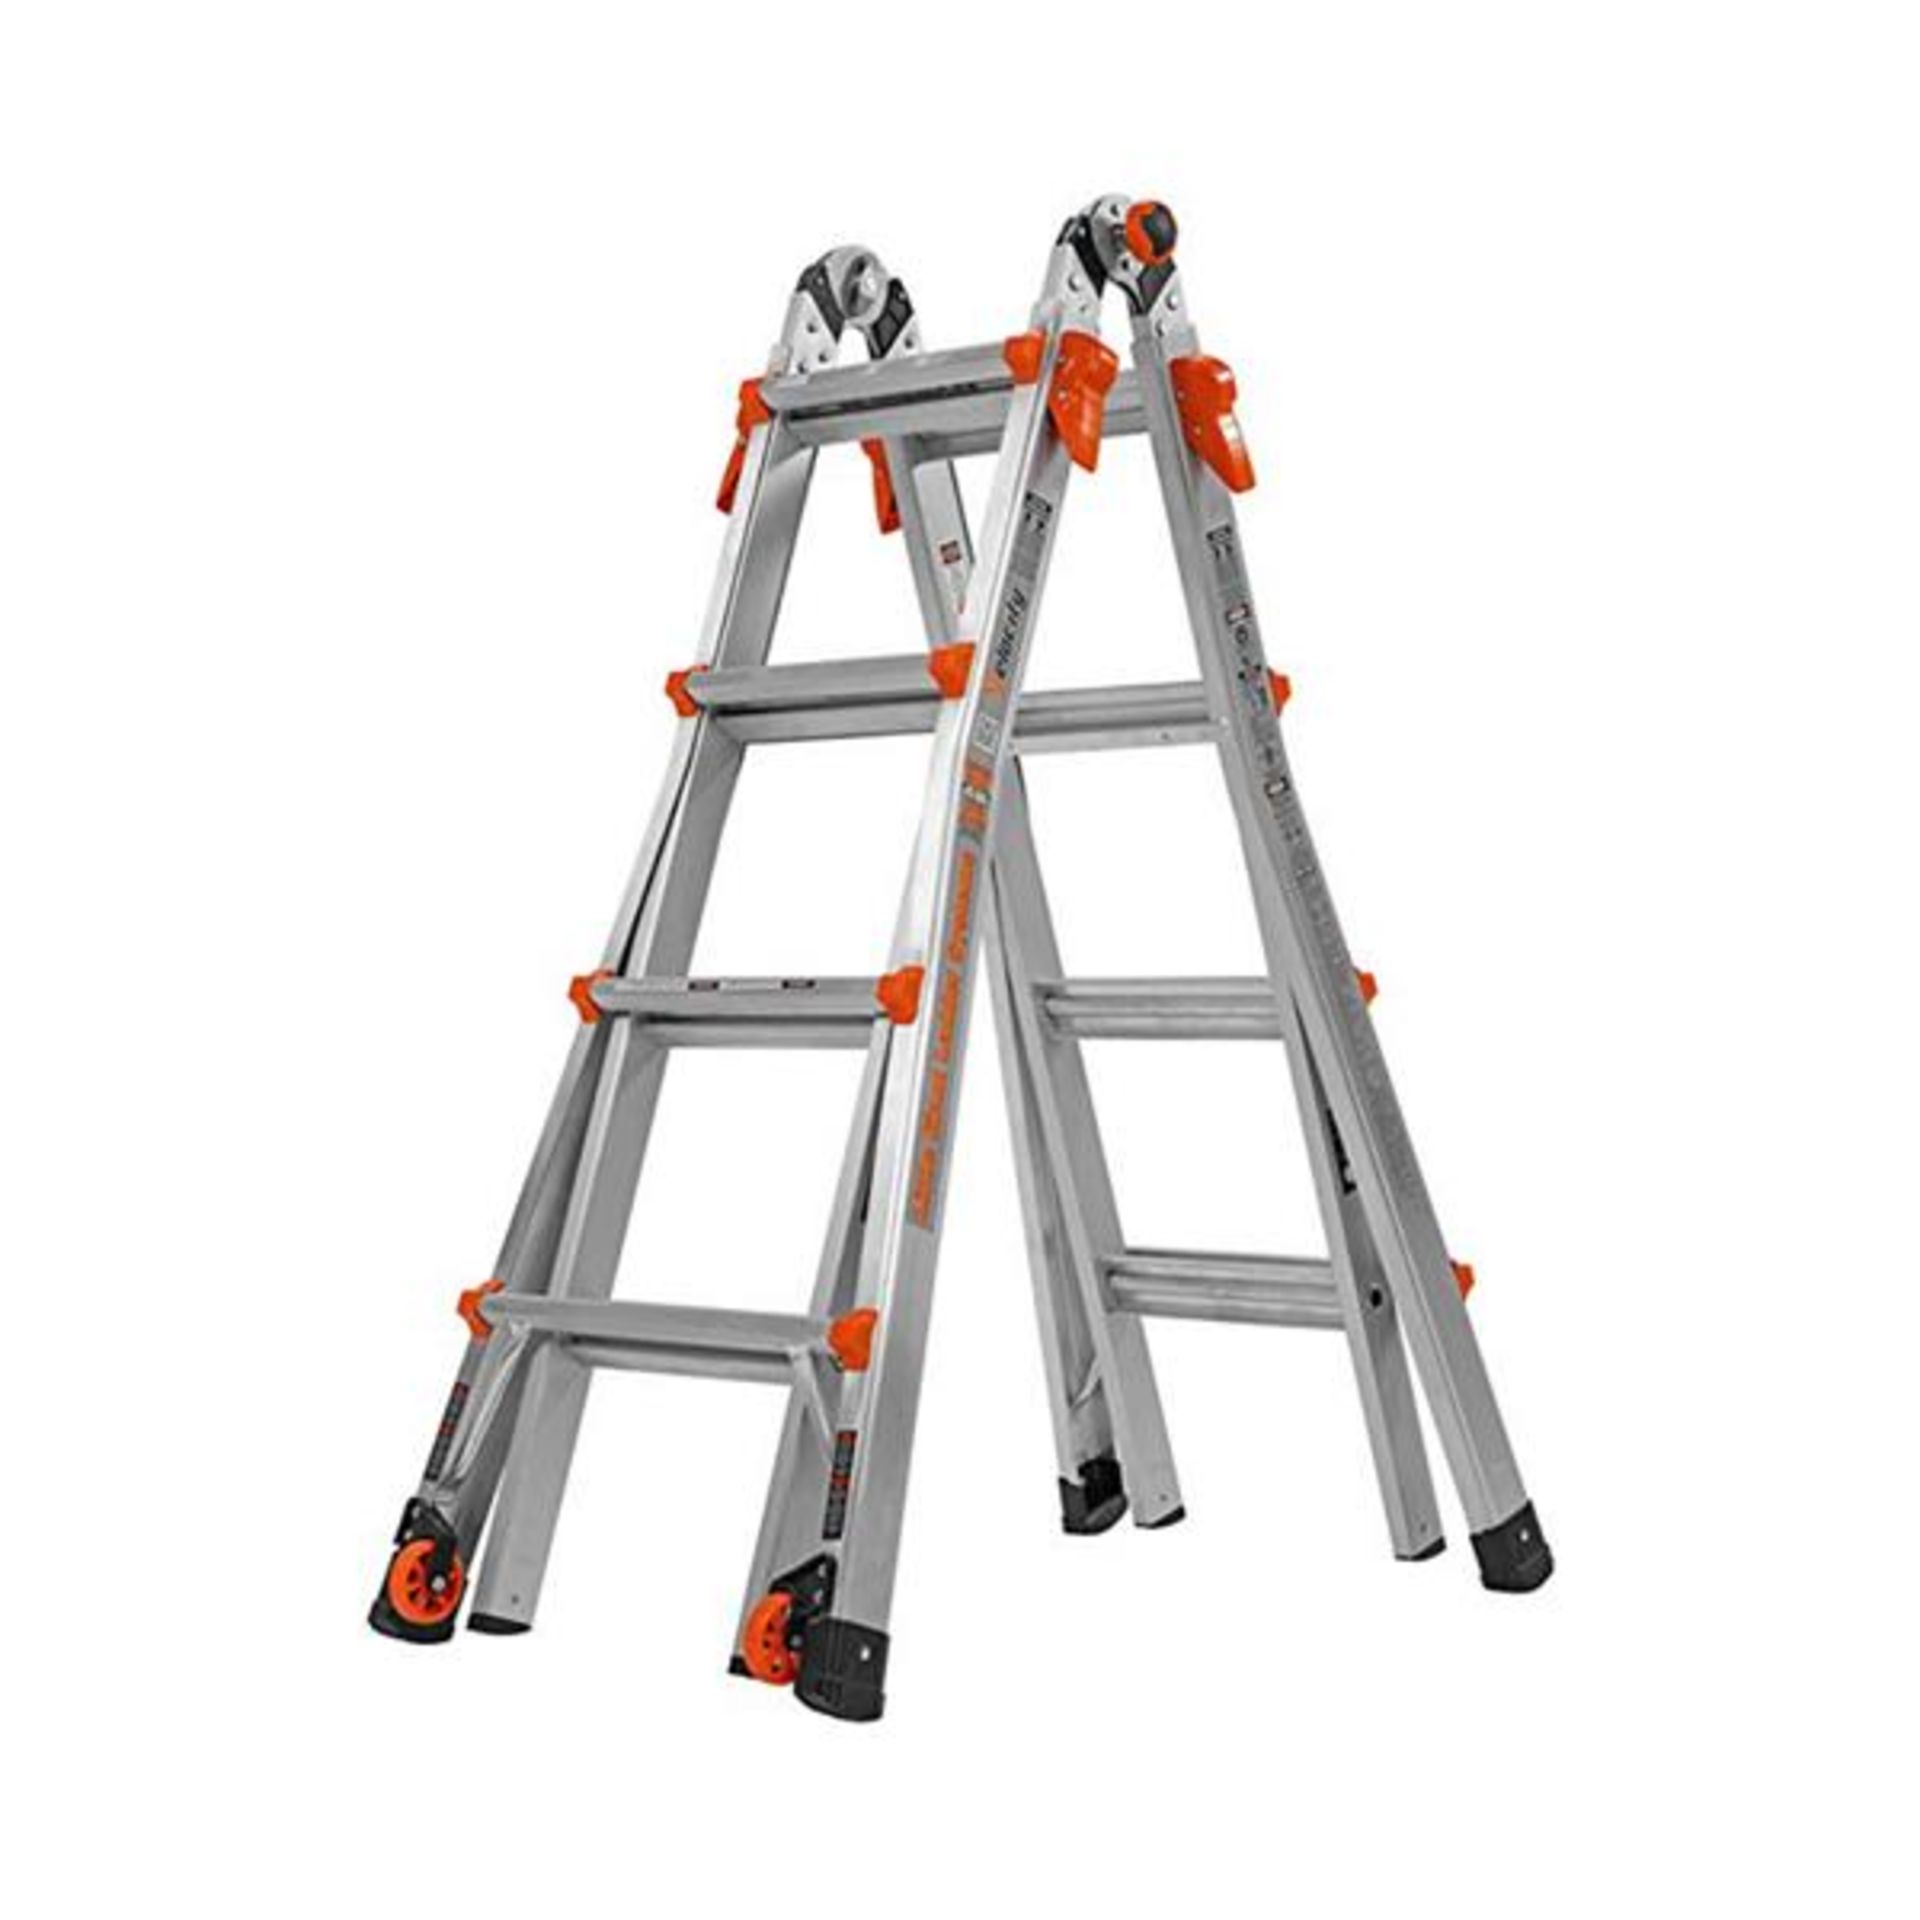 1 x Little Giant 4 Step Multipurpose Velocity Ladder - Type 15417EN - Ref: JP909 GITW - CL732 -